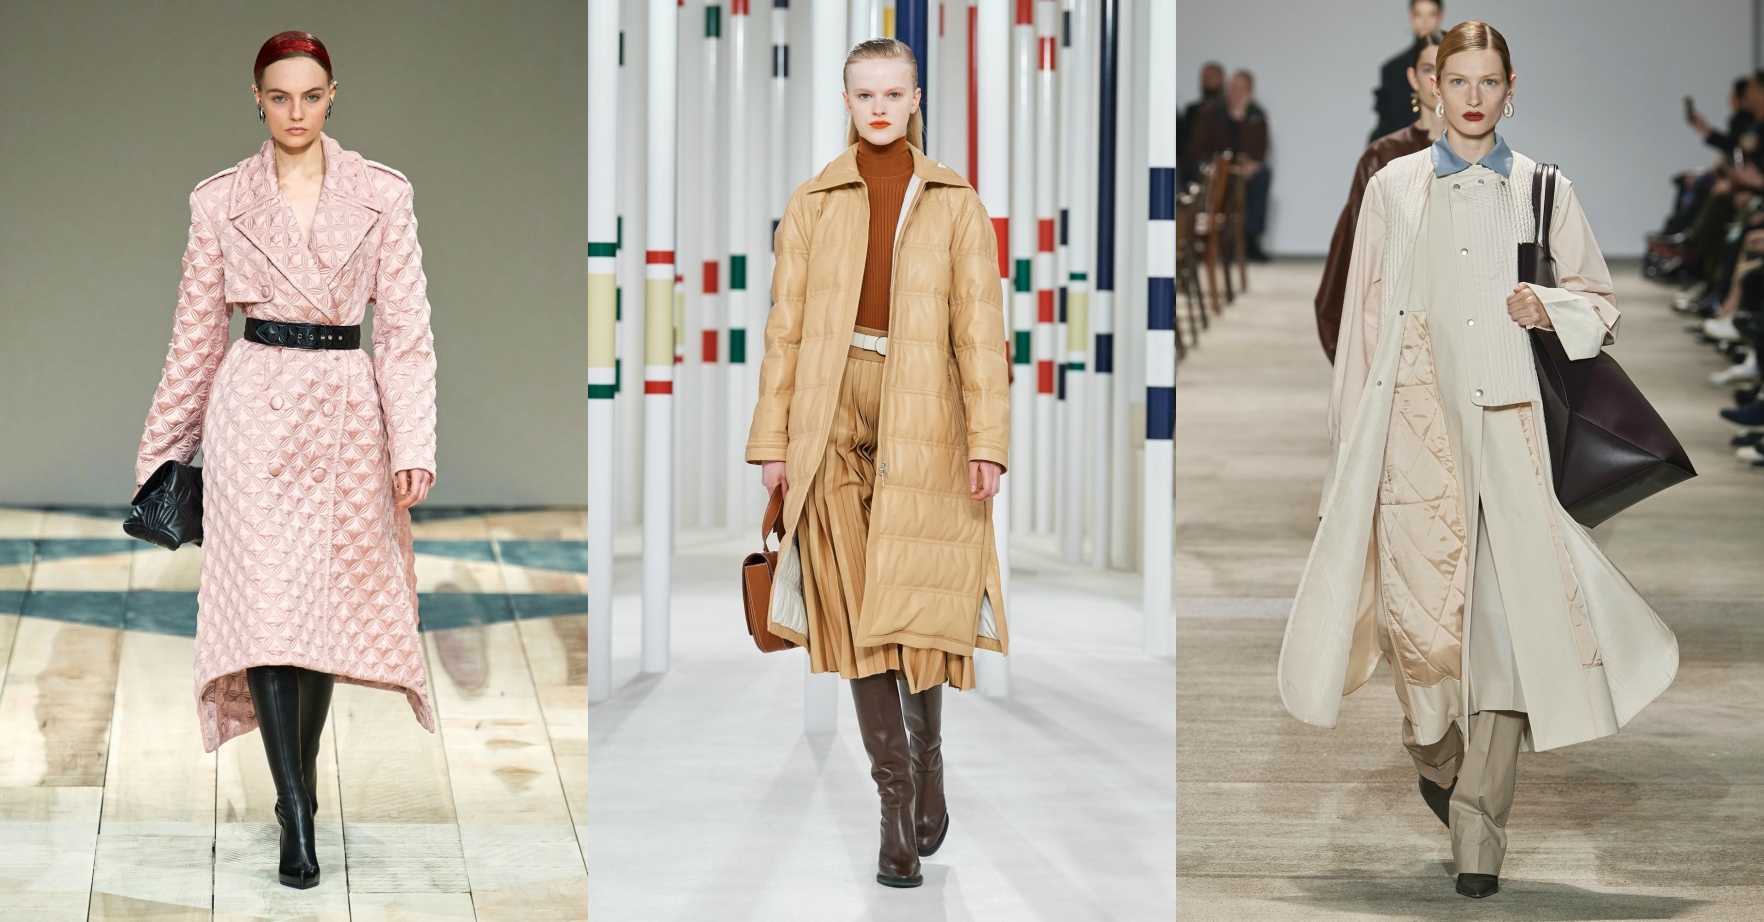 Модные женcкие пальто (100 фото): тренды весна-осень 2020 года